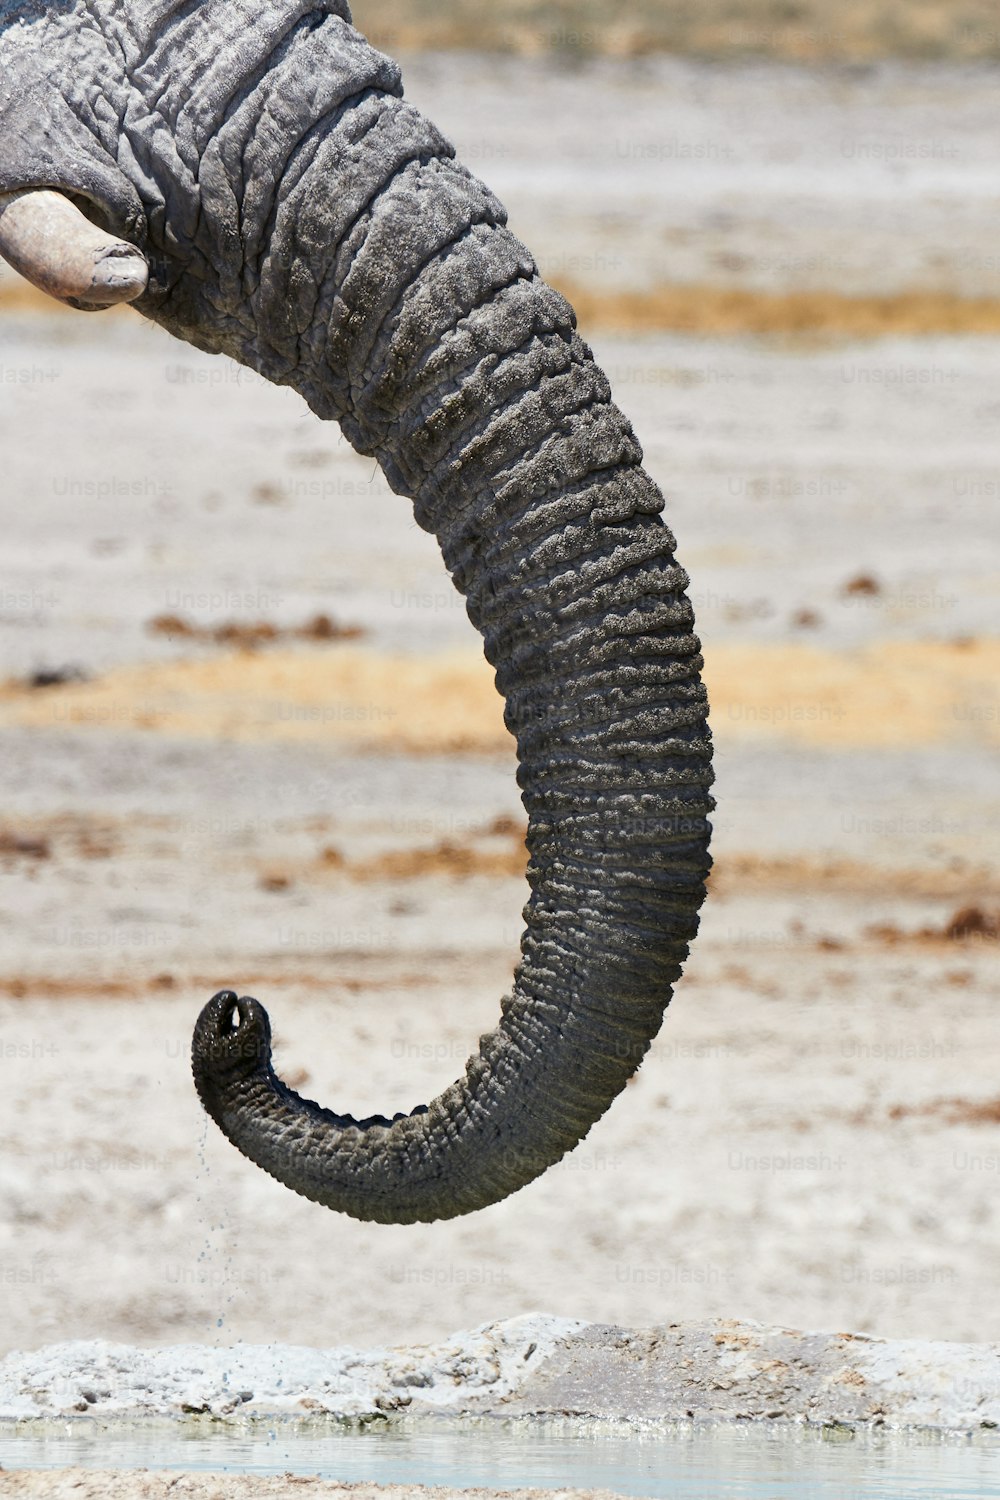 Trompa de un elefante africano en el Parque Nacional de Etosha